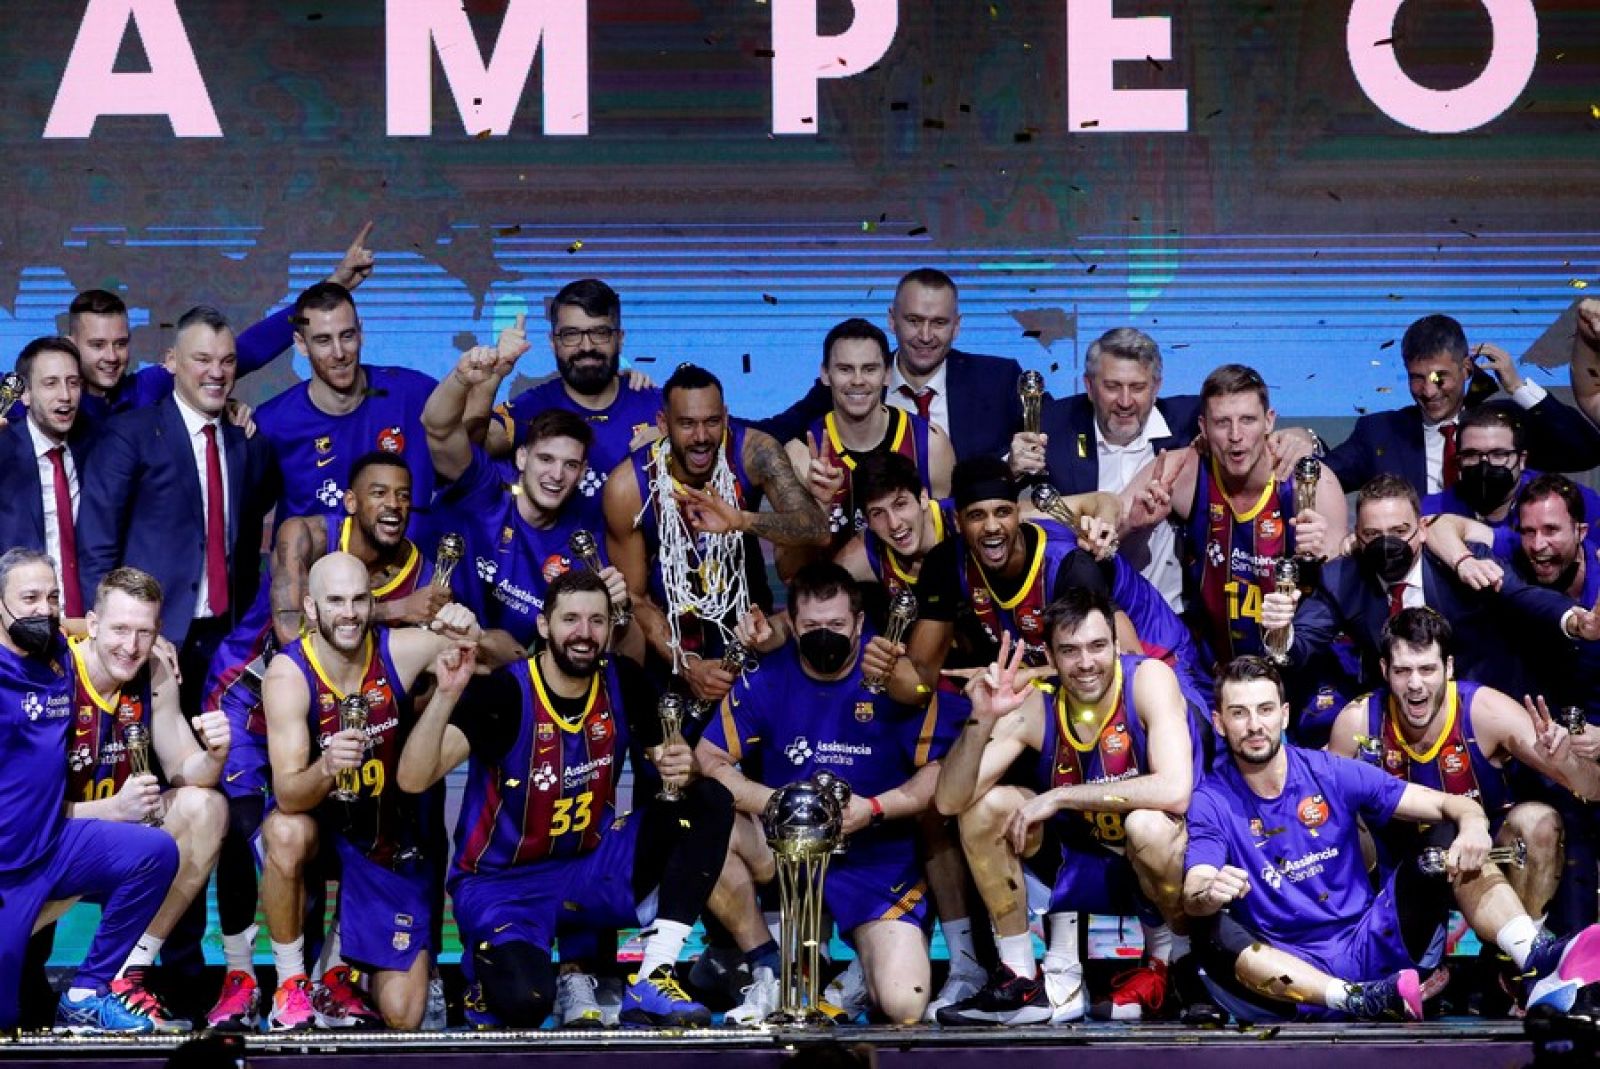  Tablero deportivo - El FC Barcelona gana la Copa del Rey de baloncesto - Escuchar ahora